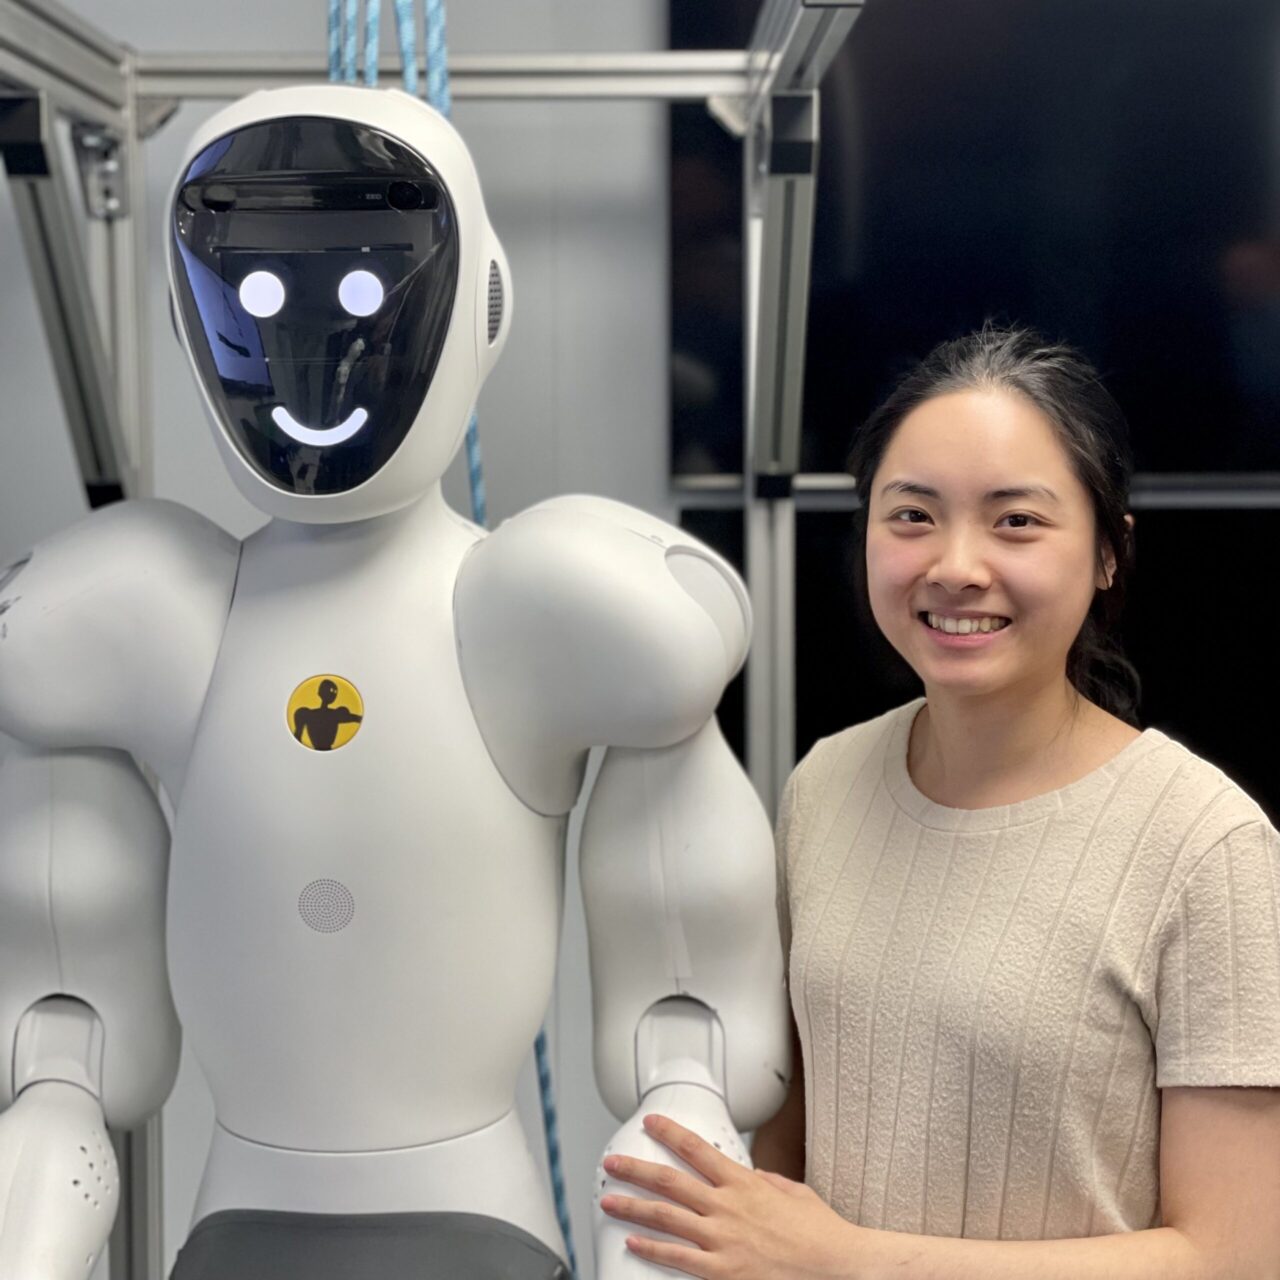 Chatbots met AI en GPT-3: een revolutionaire stap voor conversational AI